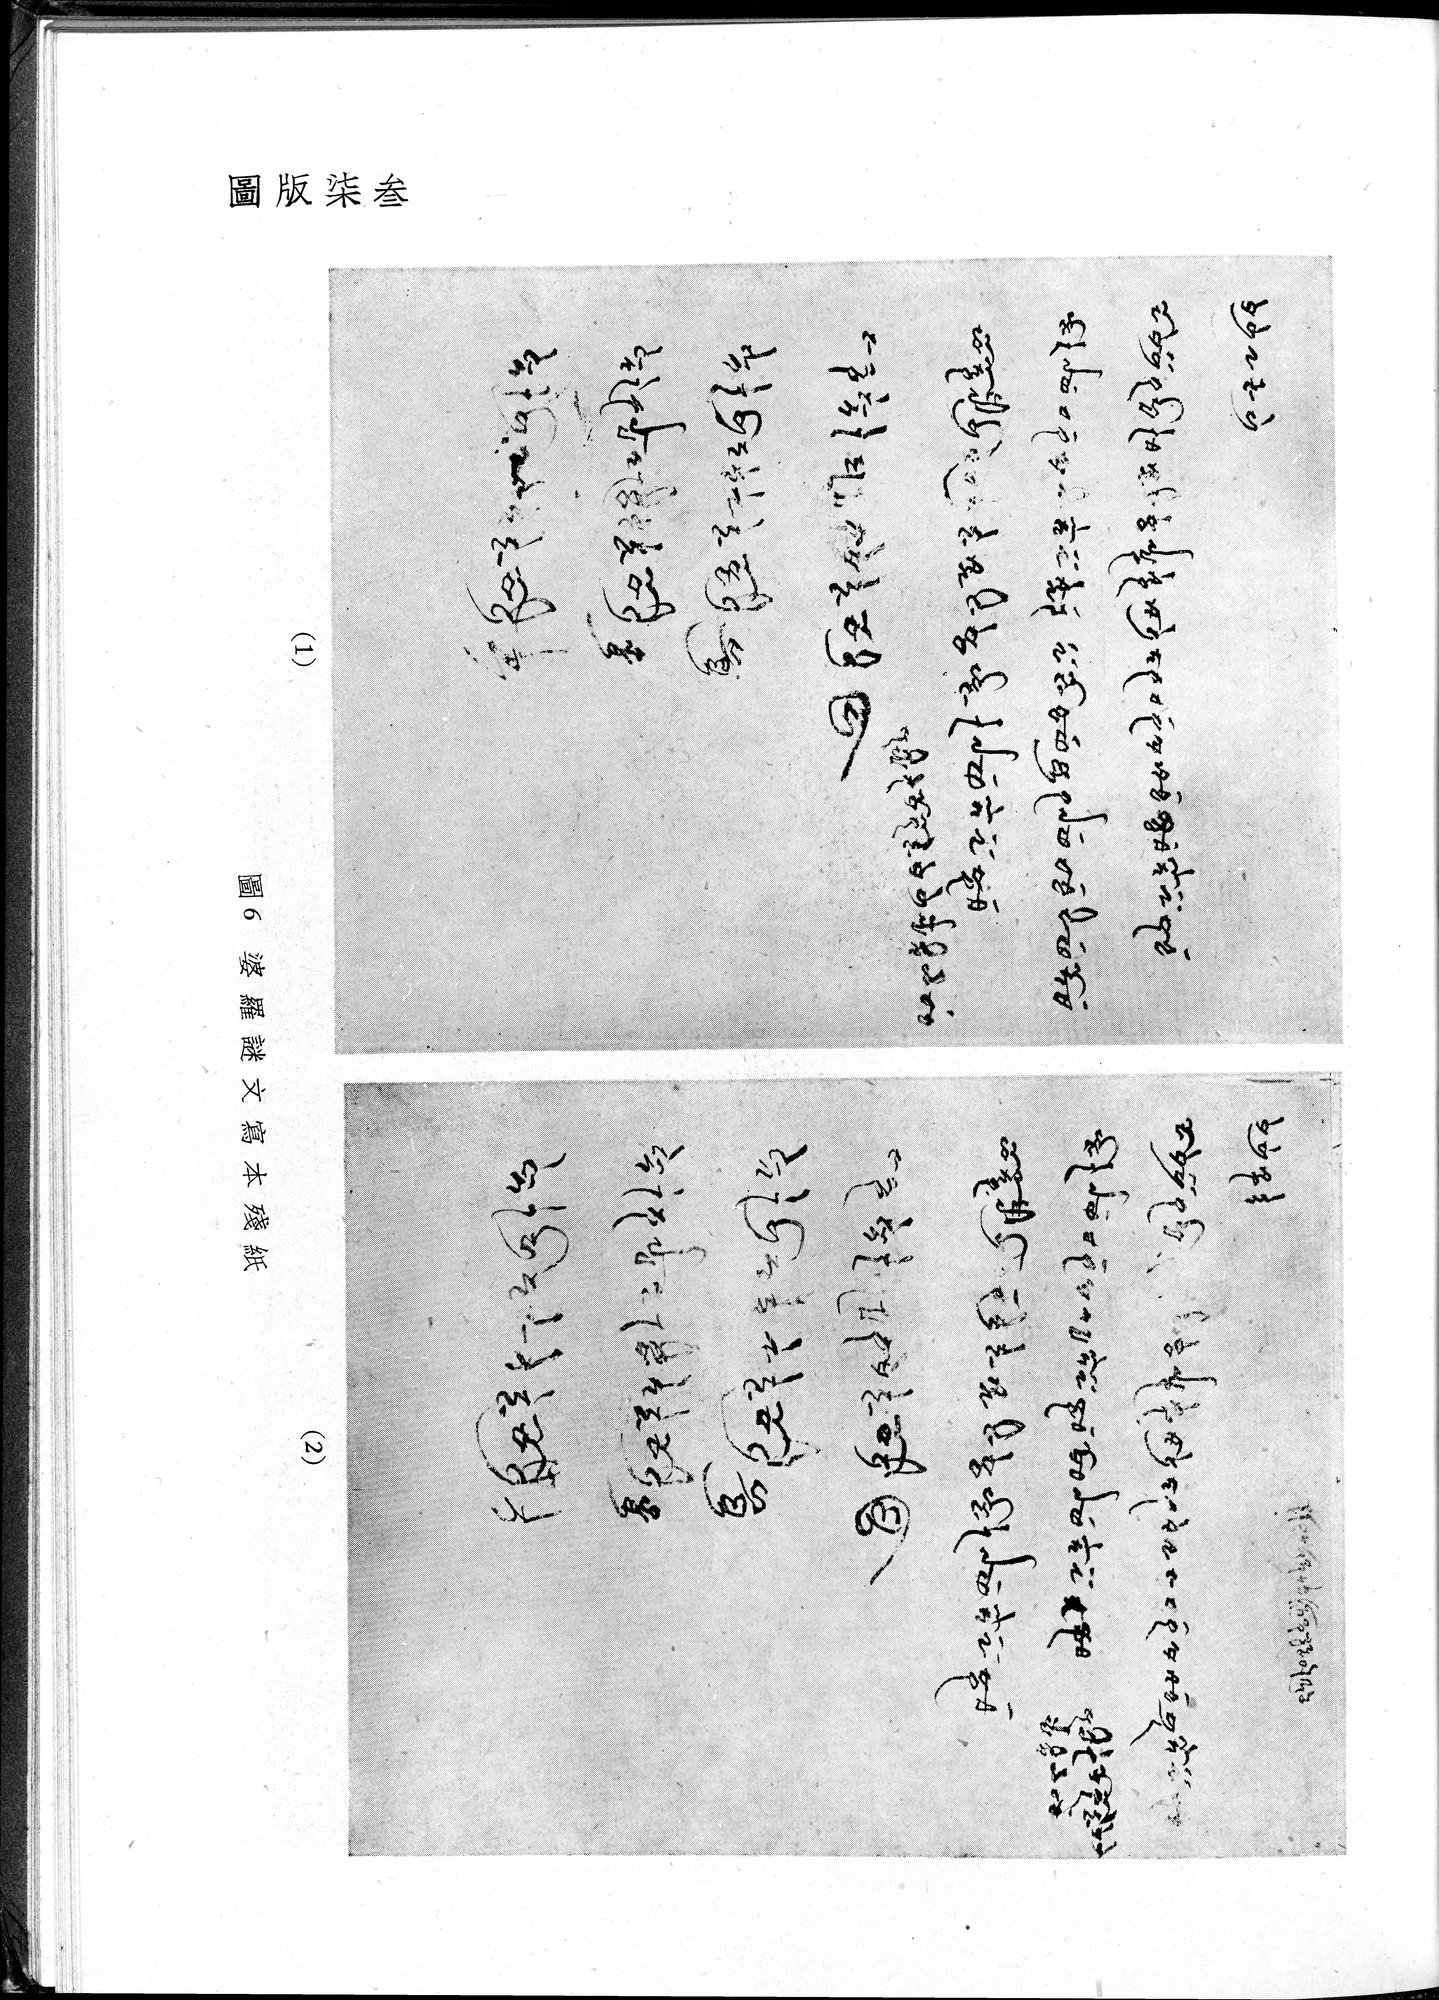 塔里木盆地考古記 : vol.1 / Page 307 (Grayscale High Resolution Image)